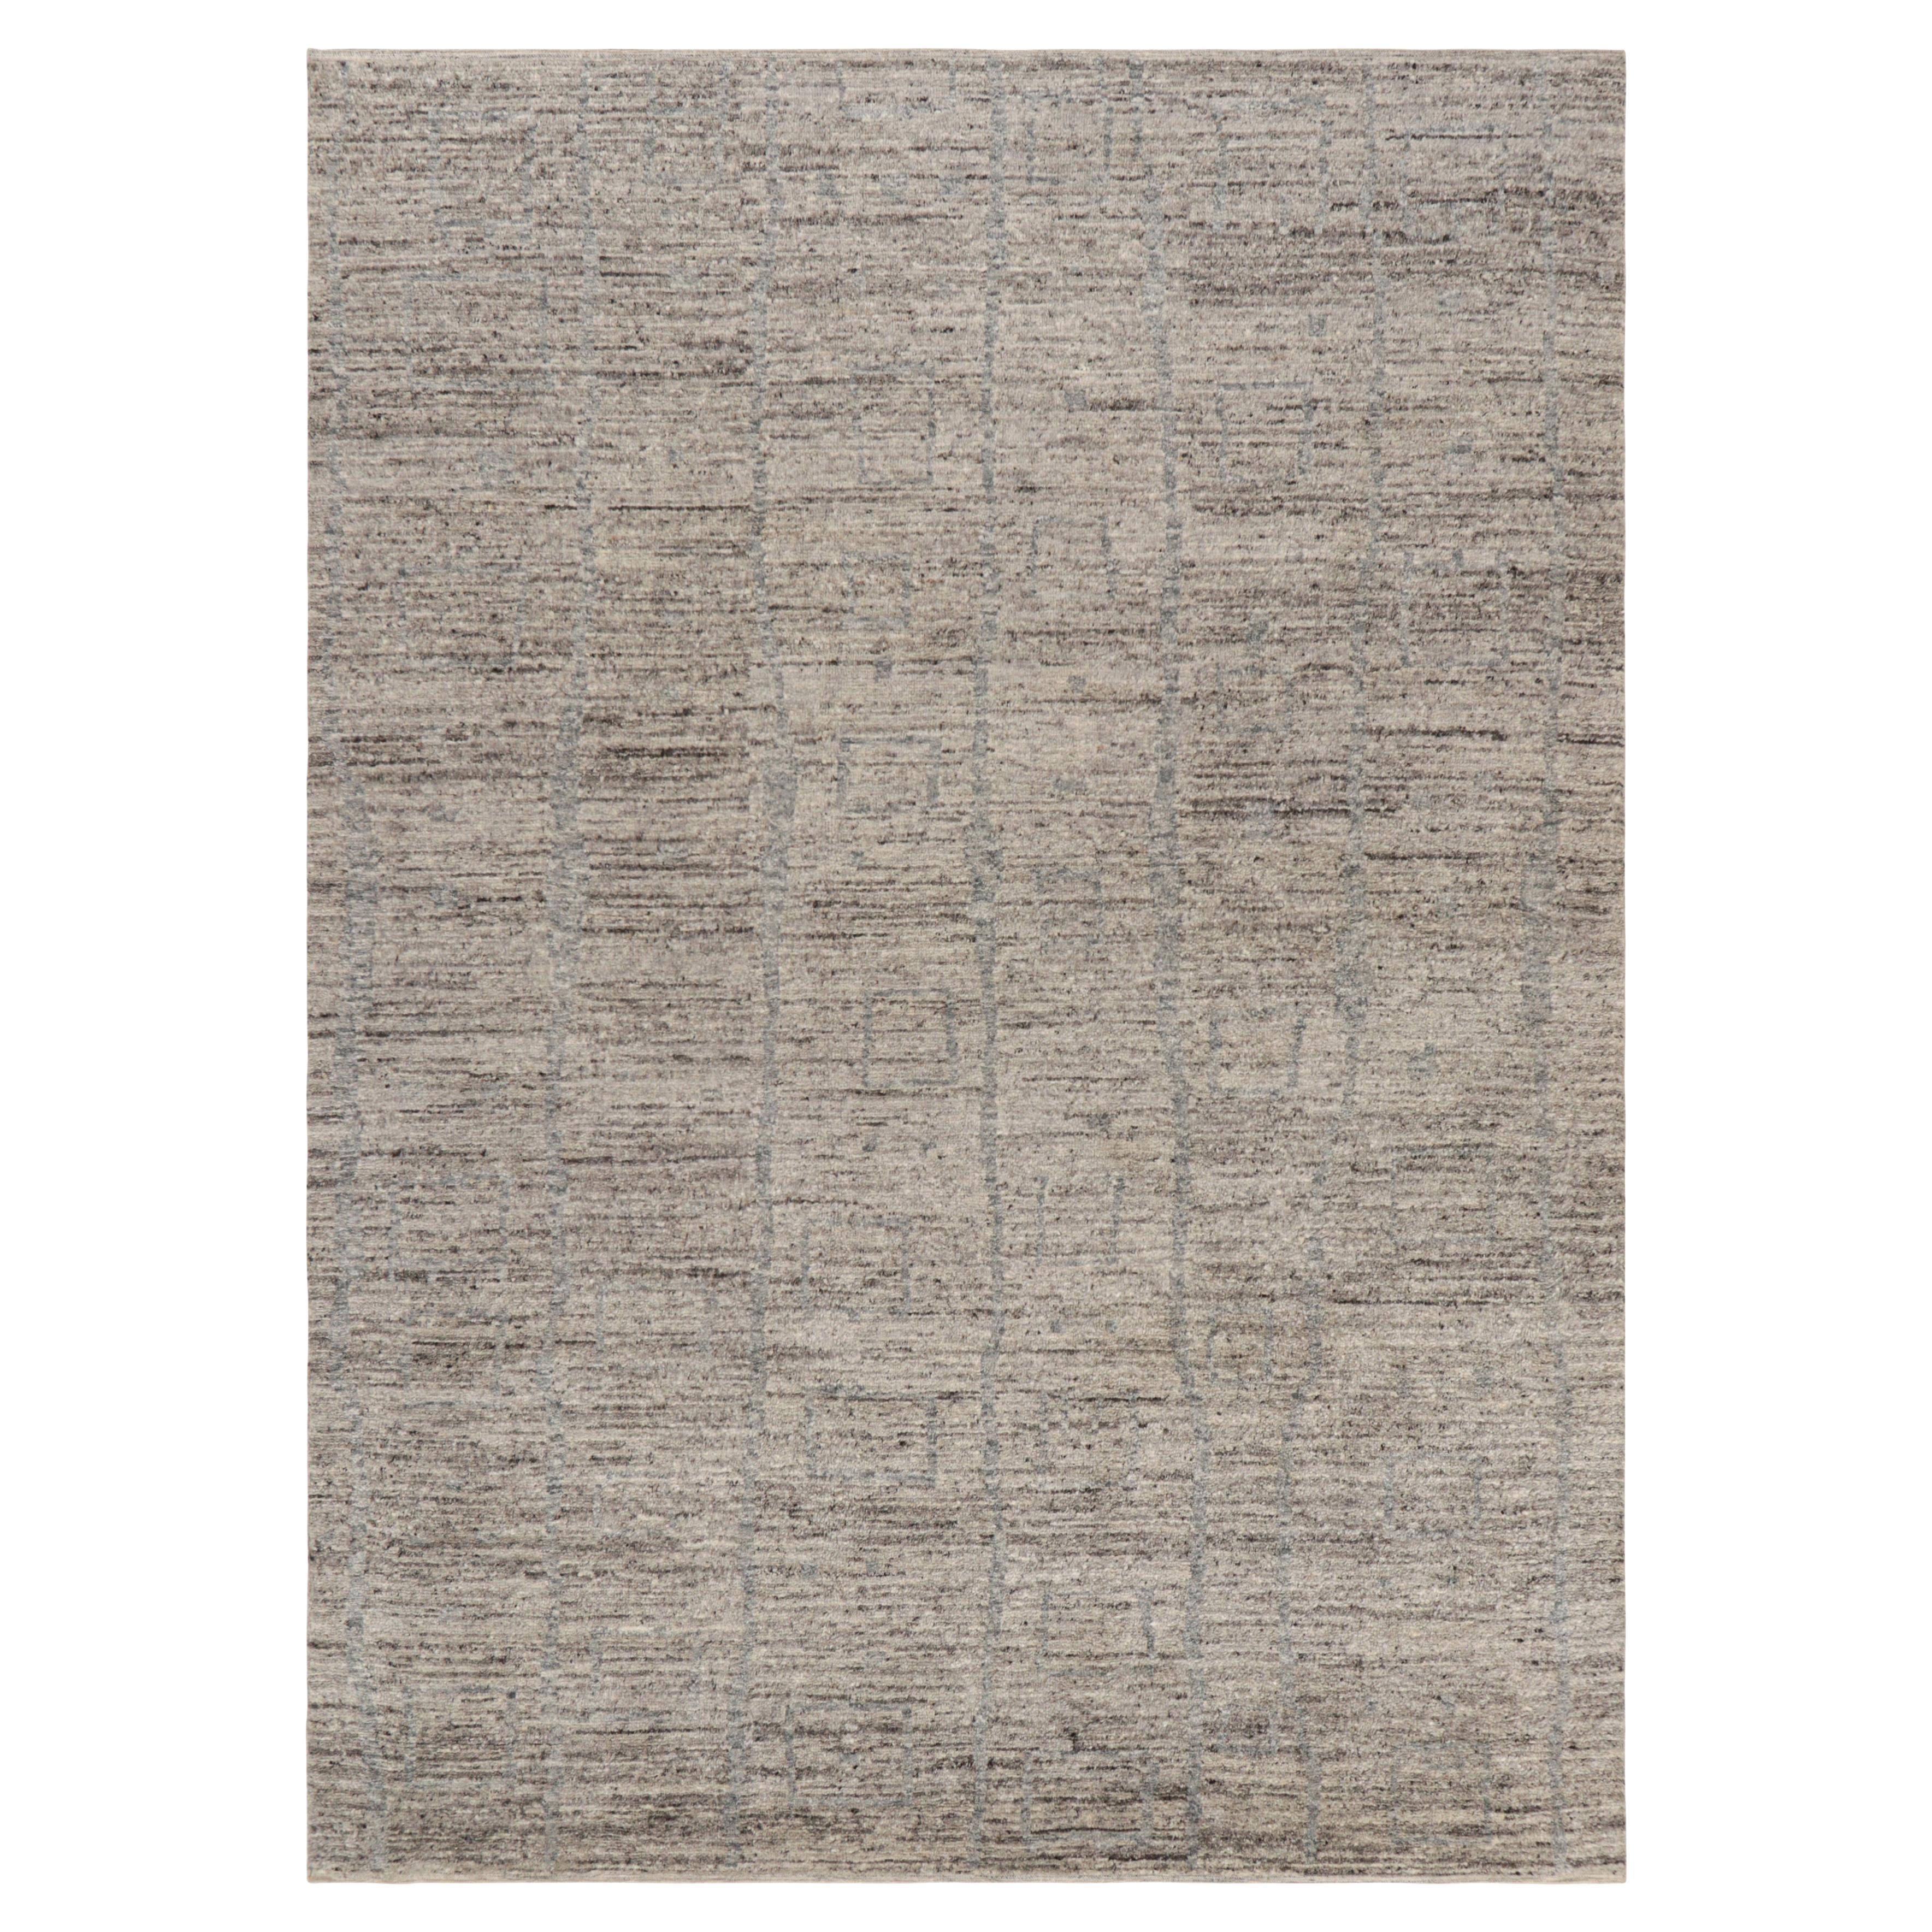 Rug & Kilim's Marokkanischer Teppich in Brown-Braun mit grauen geometrischen Mustern